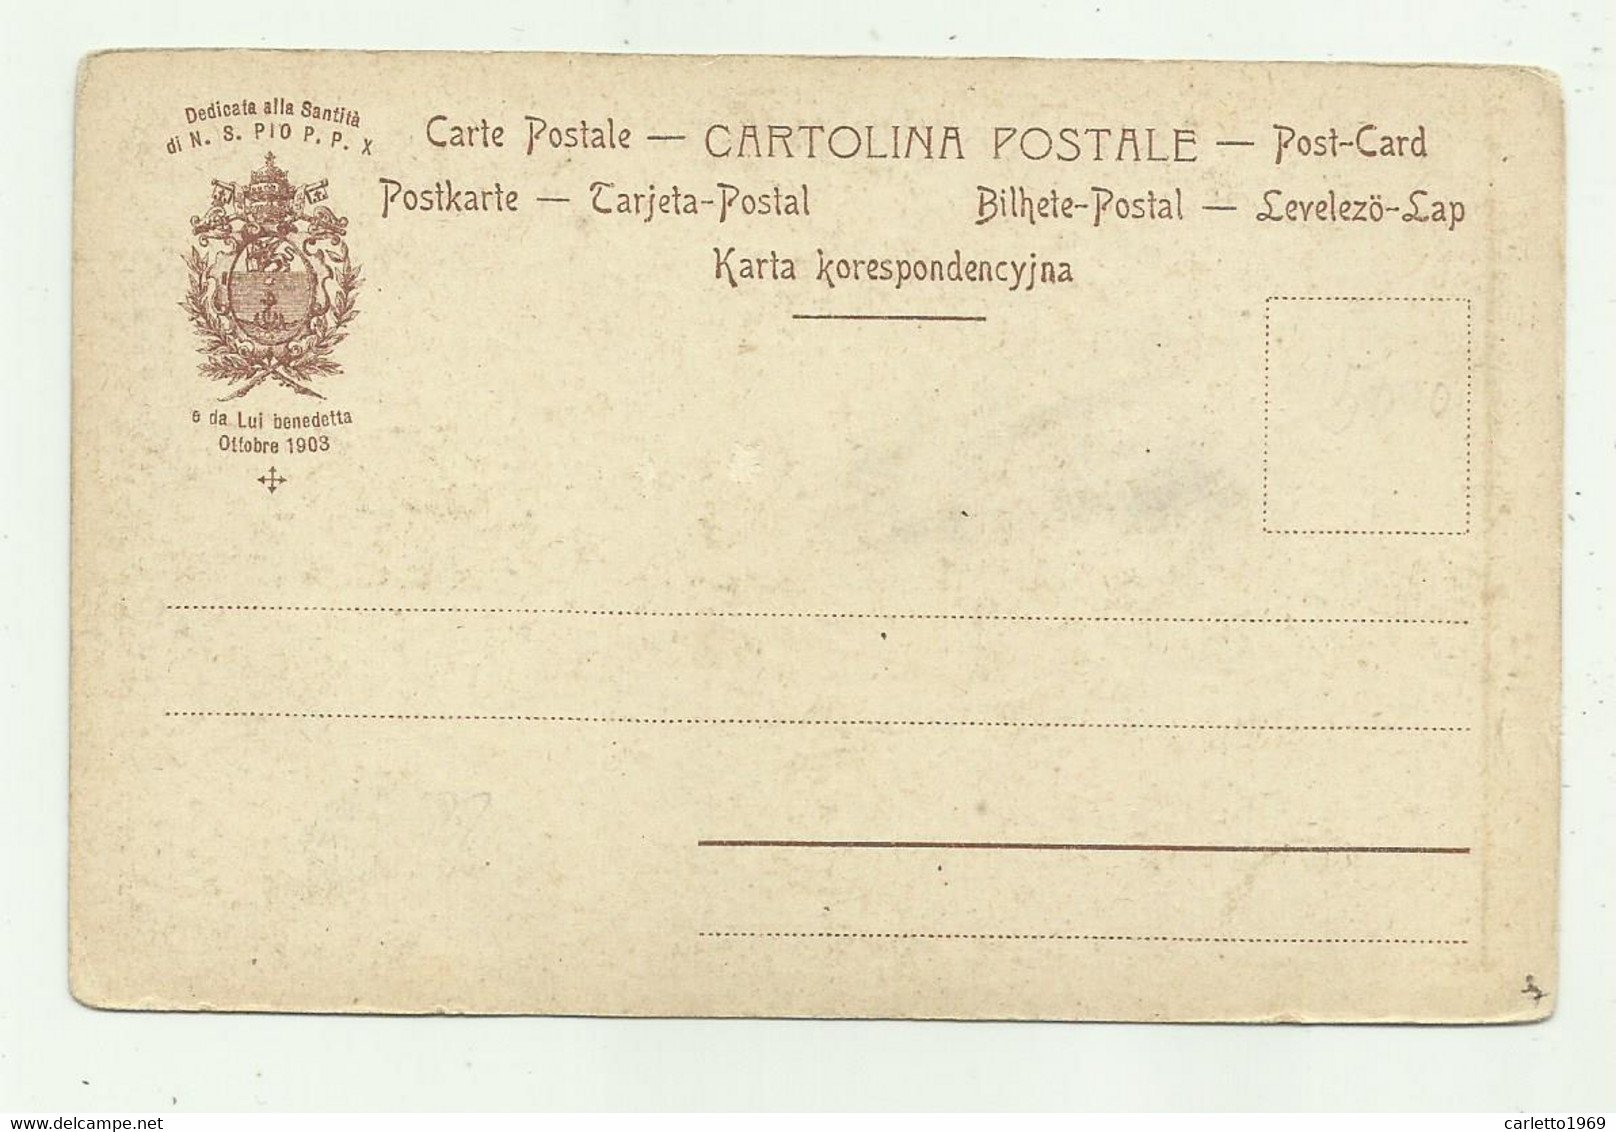 S.ELEUTERIO  MARTIRE DELL'EPIRO  - CARTOLINA DEDICATA A PIO P.P X DA LUI BENEDETTA OTTOBRE 1903 -   NV  FP - Saints